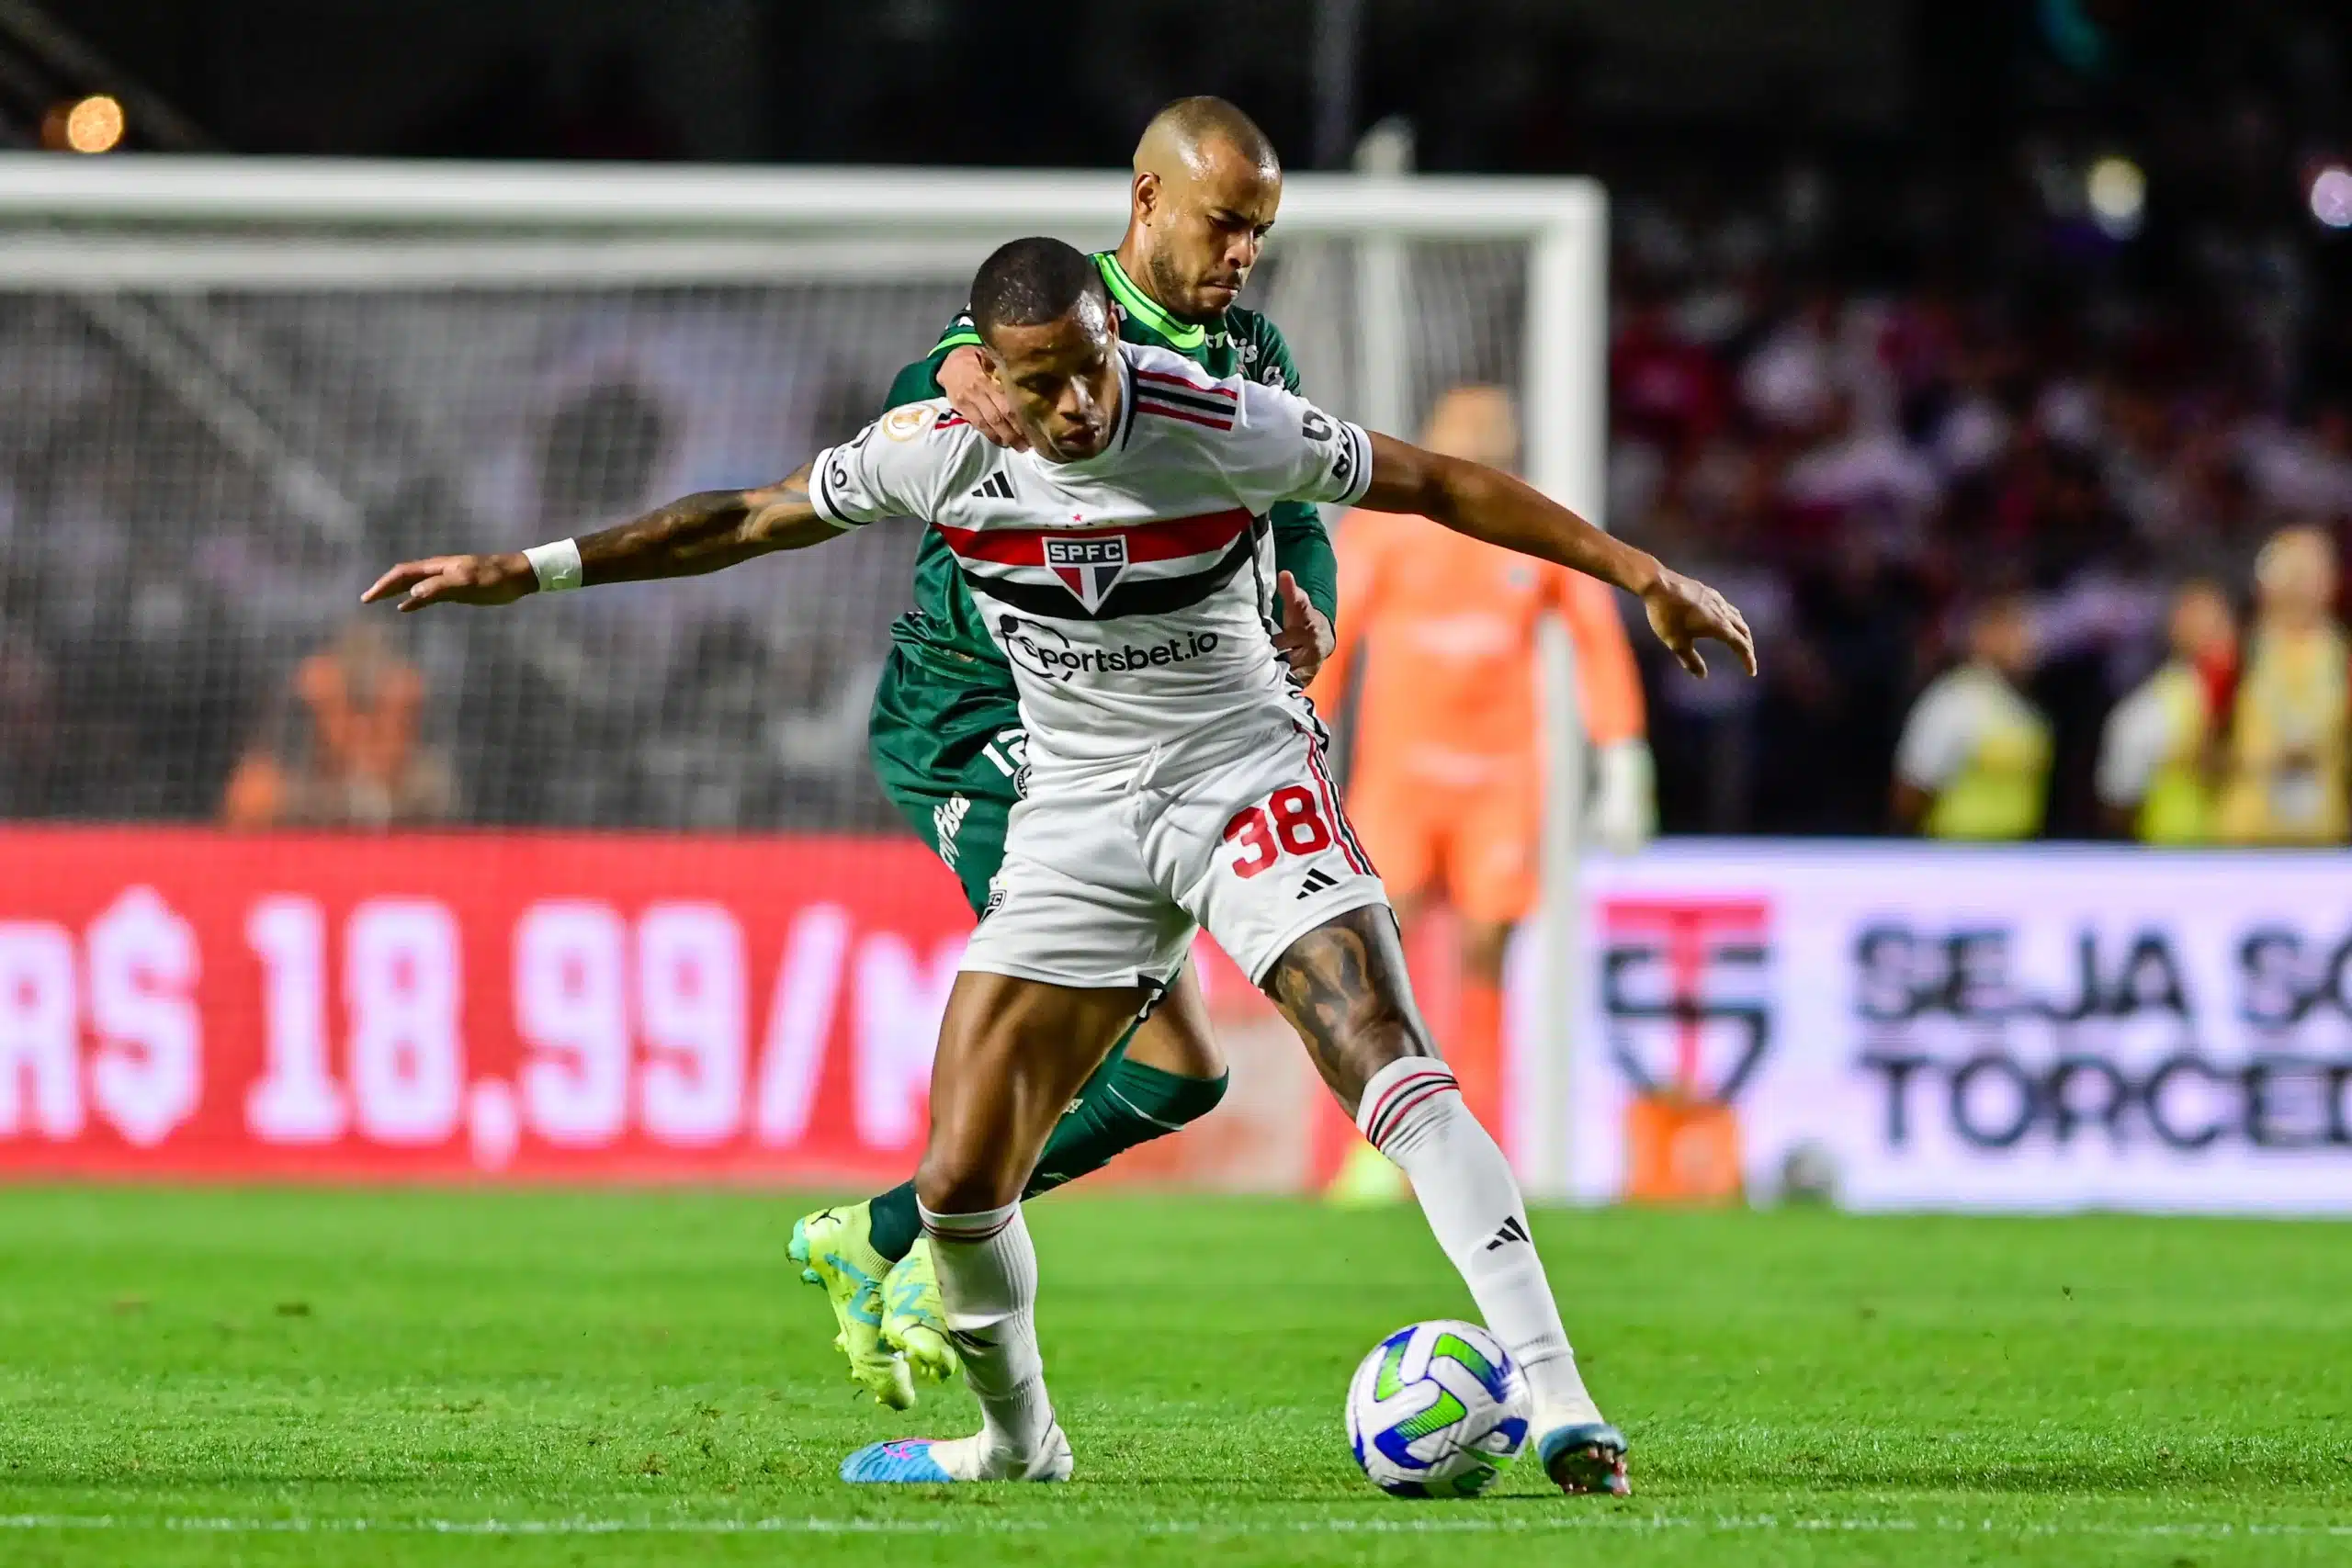 Jornalista aponta Palmeiras favorito contra o São Paulo, mas faz ressalva